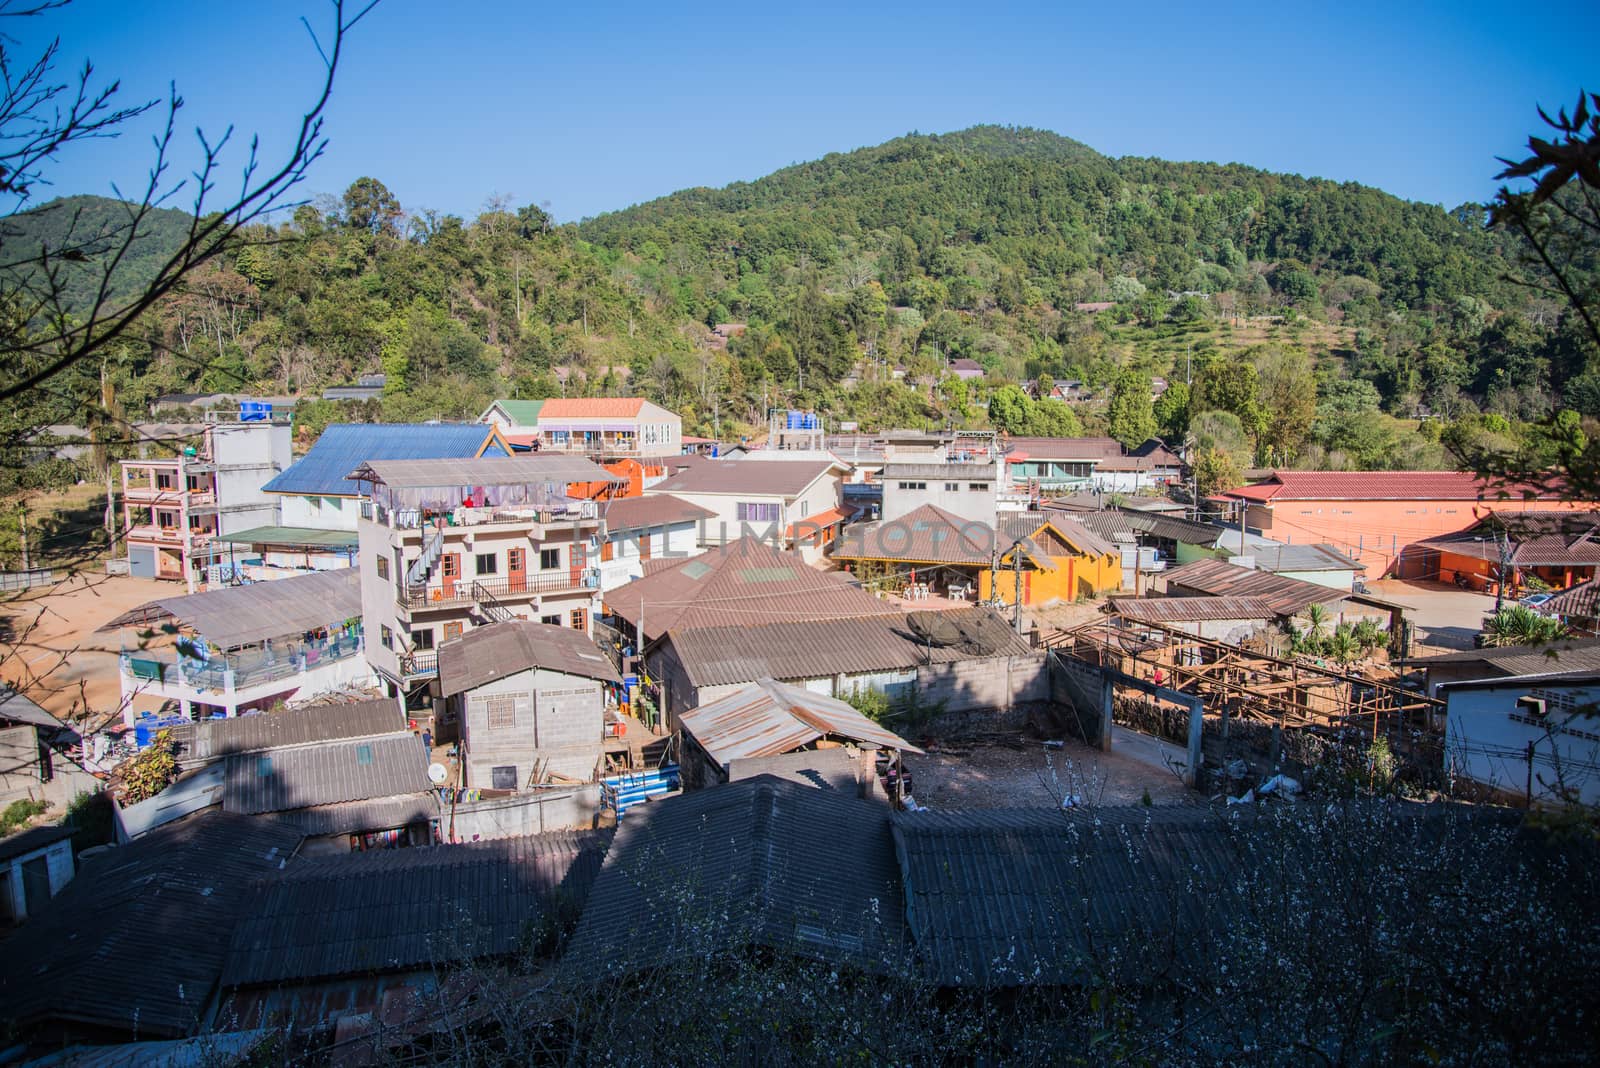 Ang Khang Village at Doi Ang Khang Chiang mai Thailand